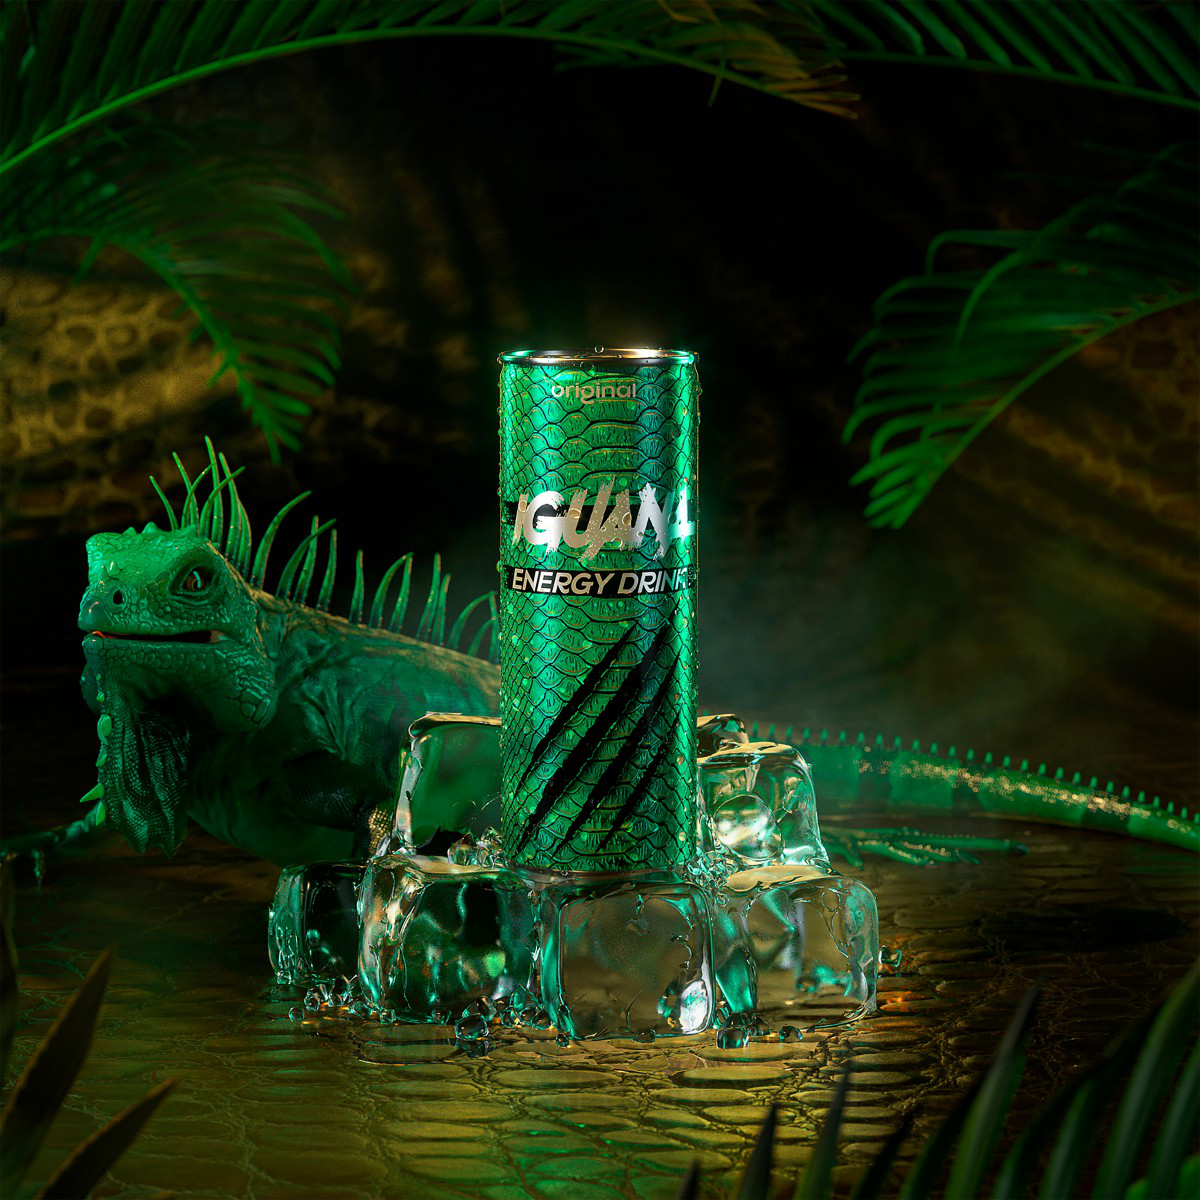 Iguana Energy Drink Packaging by Dmytro Lynnyk